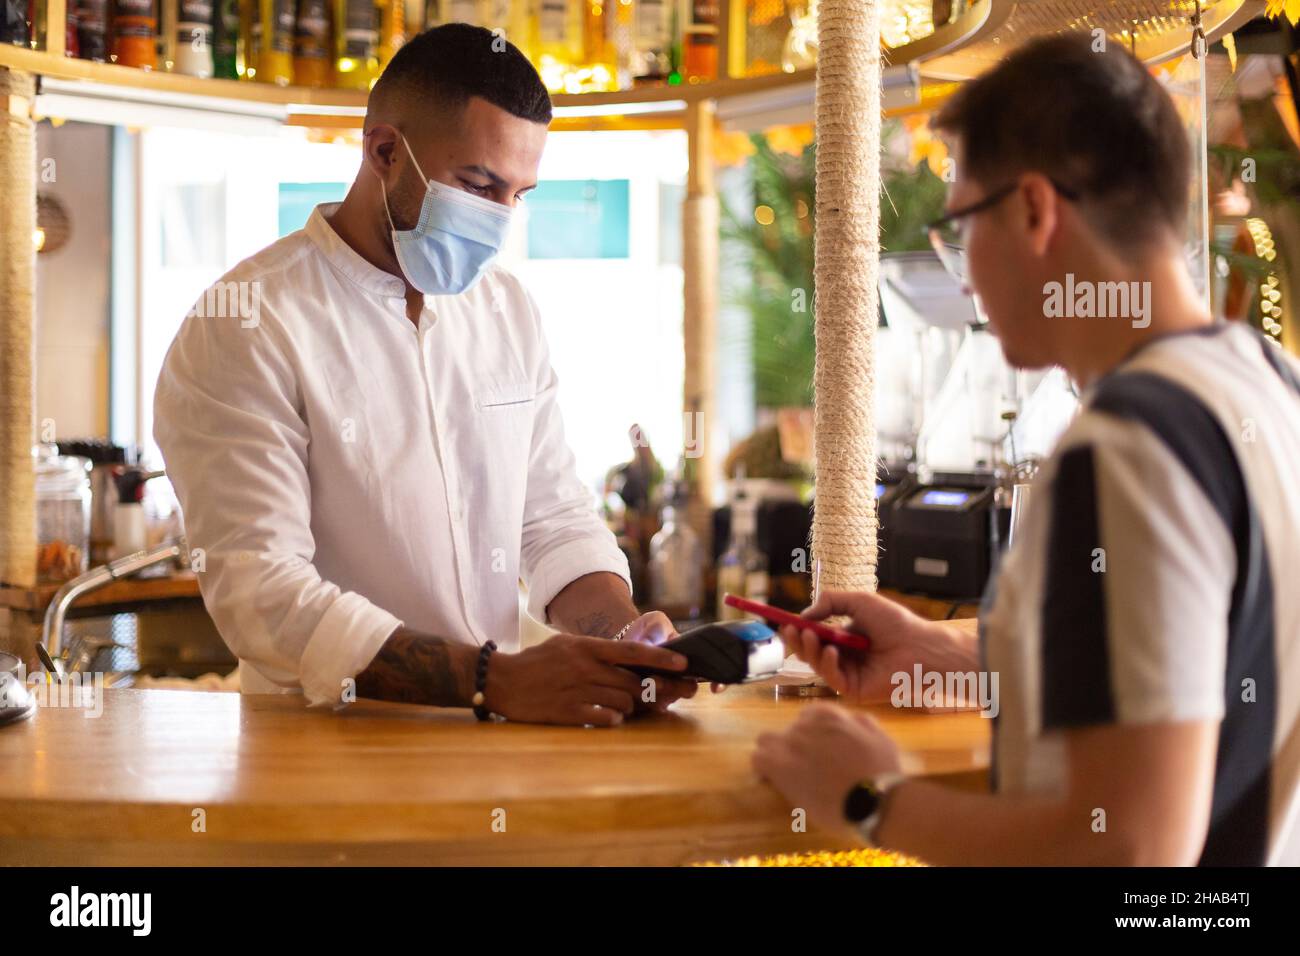 Jeune serveur latino-américain avec masque de visage charge de la barre à un client par paiement sans contact. Banque D'Images